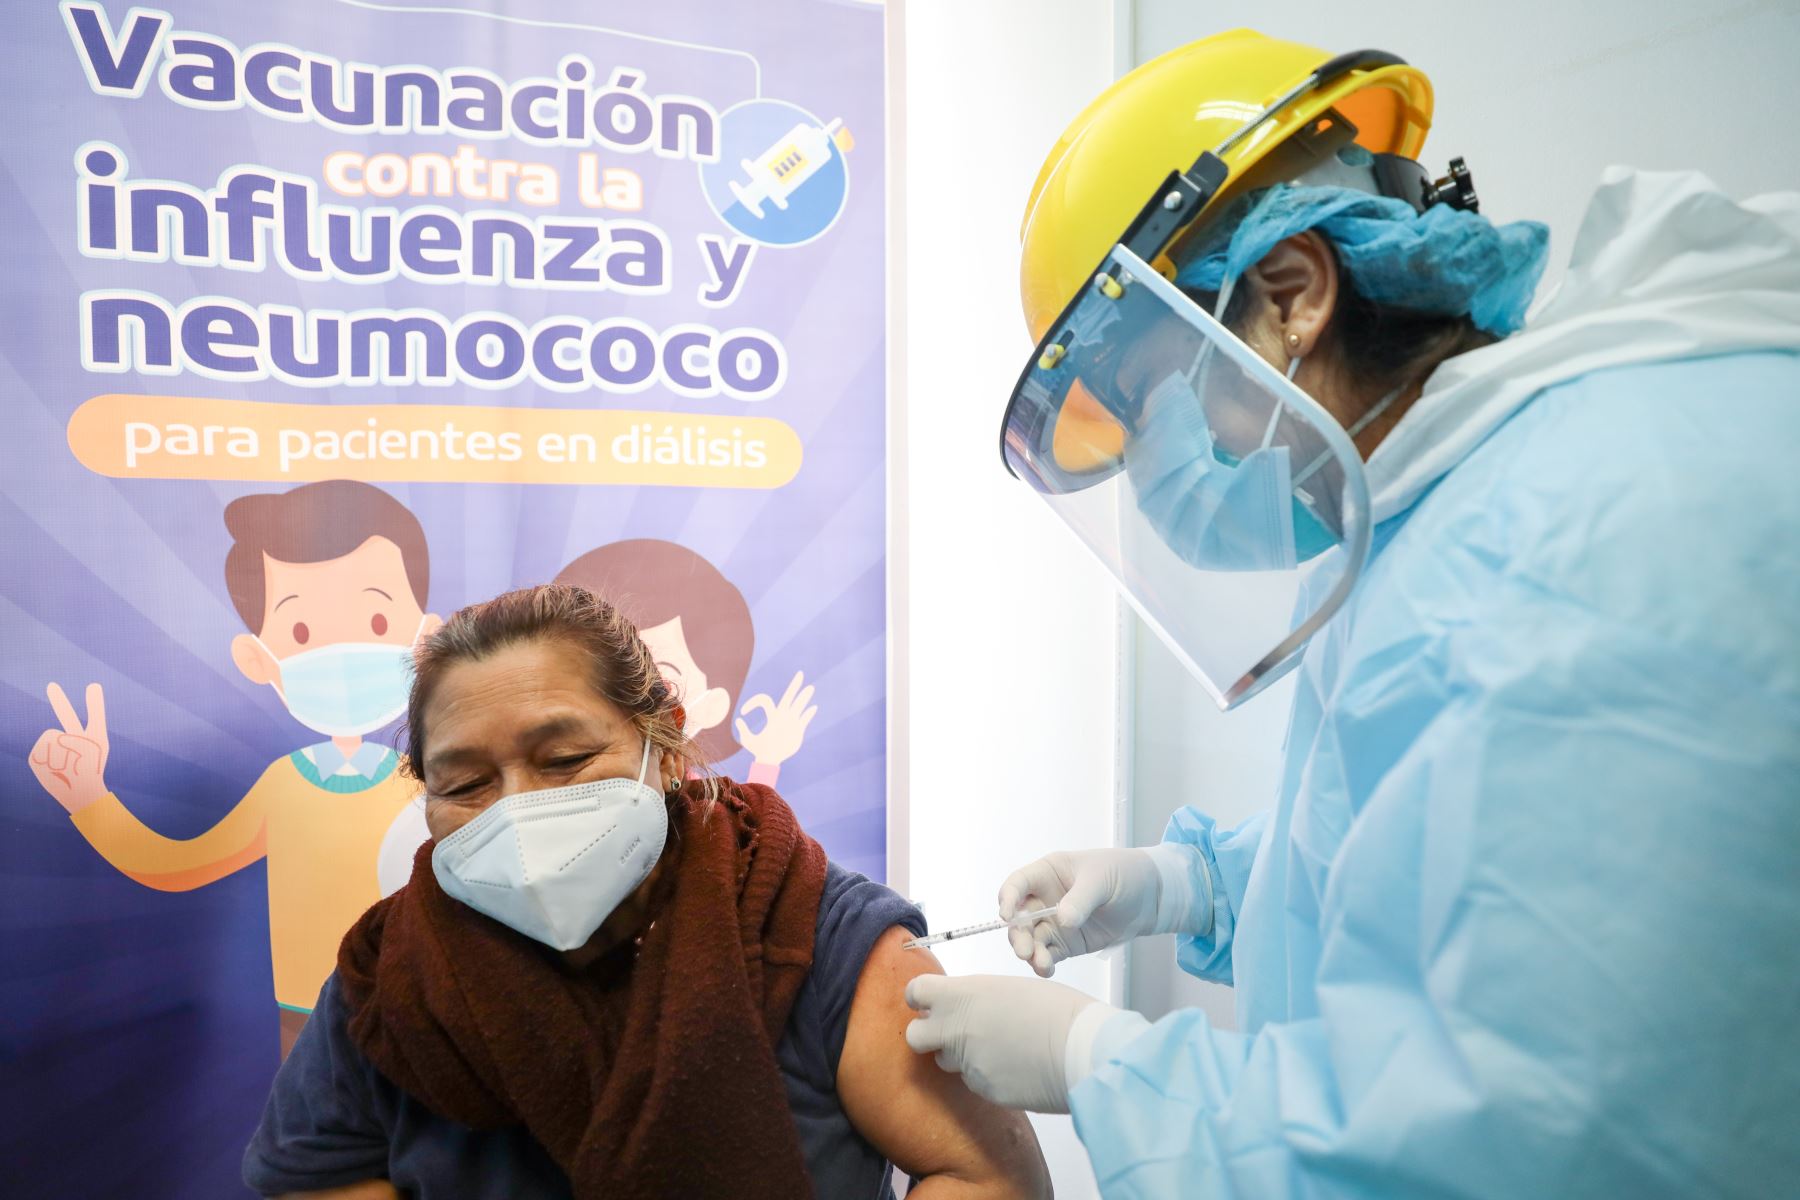 Essalud vacunará a 4, 000 pacientes renales crónicos con riesgo de contraer covid-19